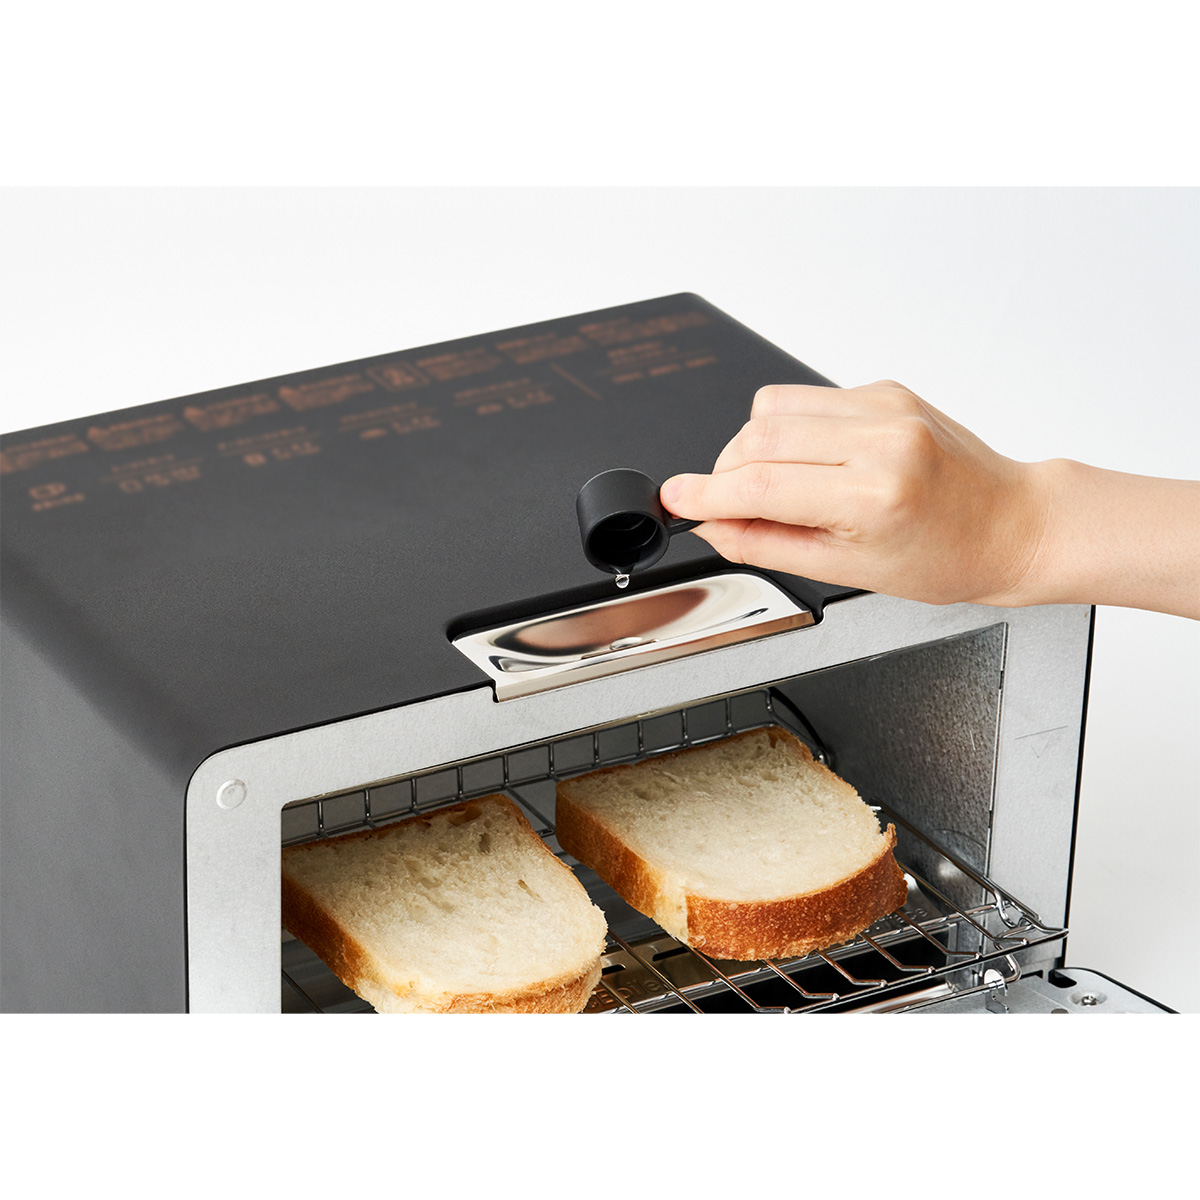 ザ・トースター [30日間全額返金保証] 正規品 「BALMUDA The Toaster」 ブラック